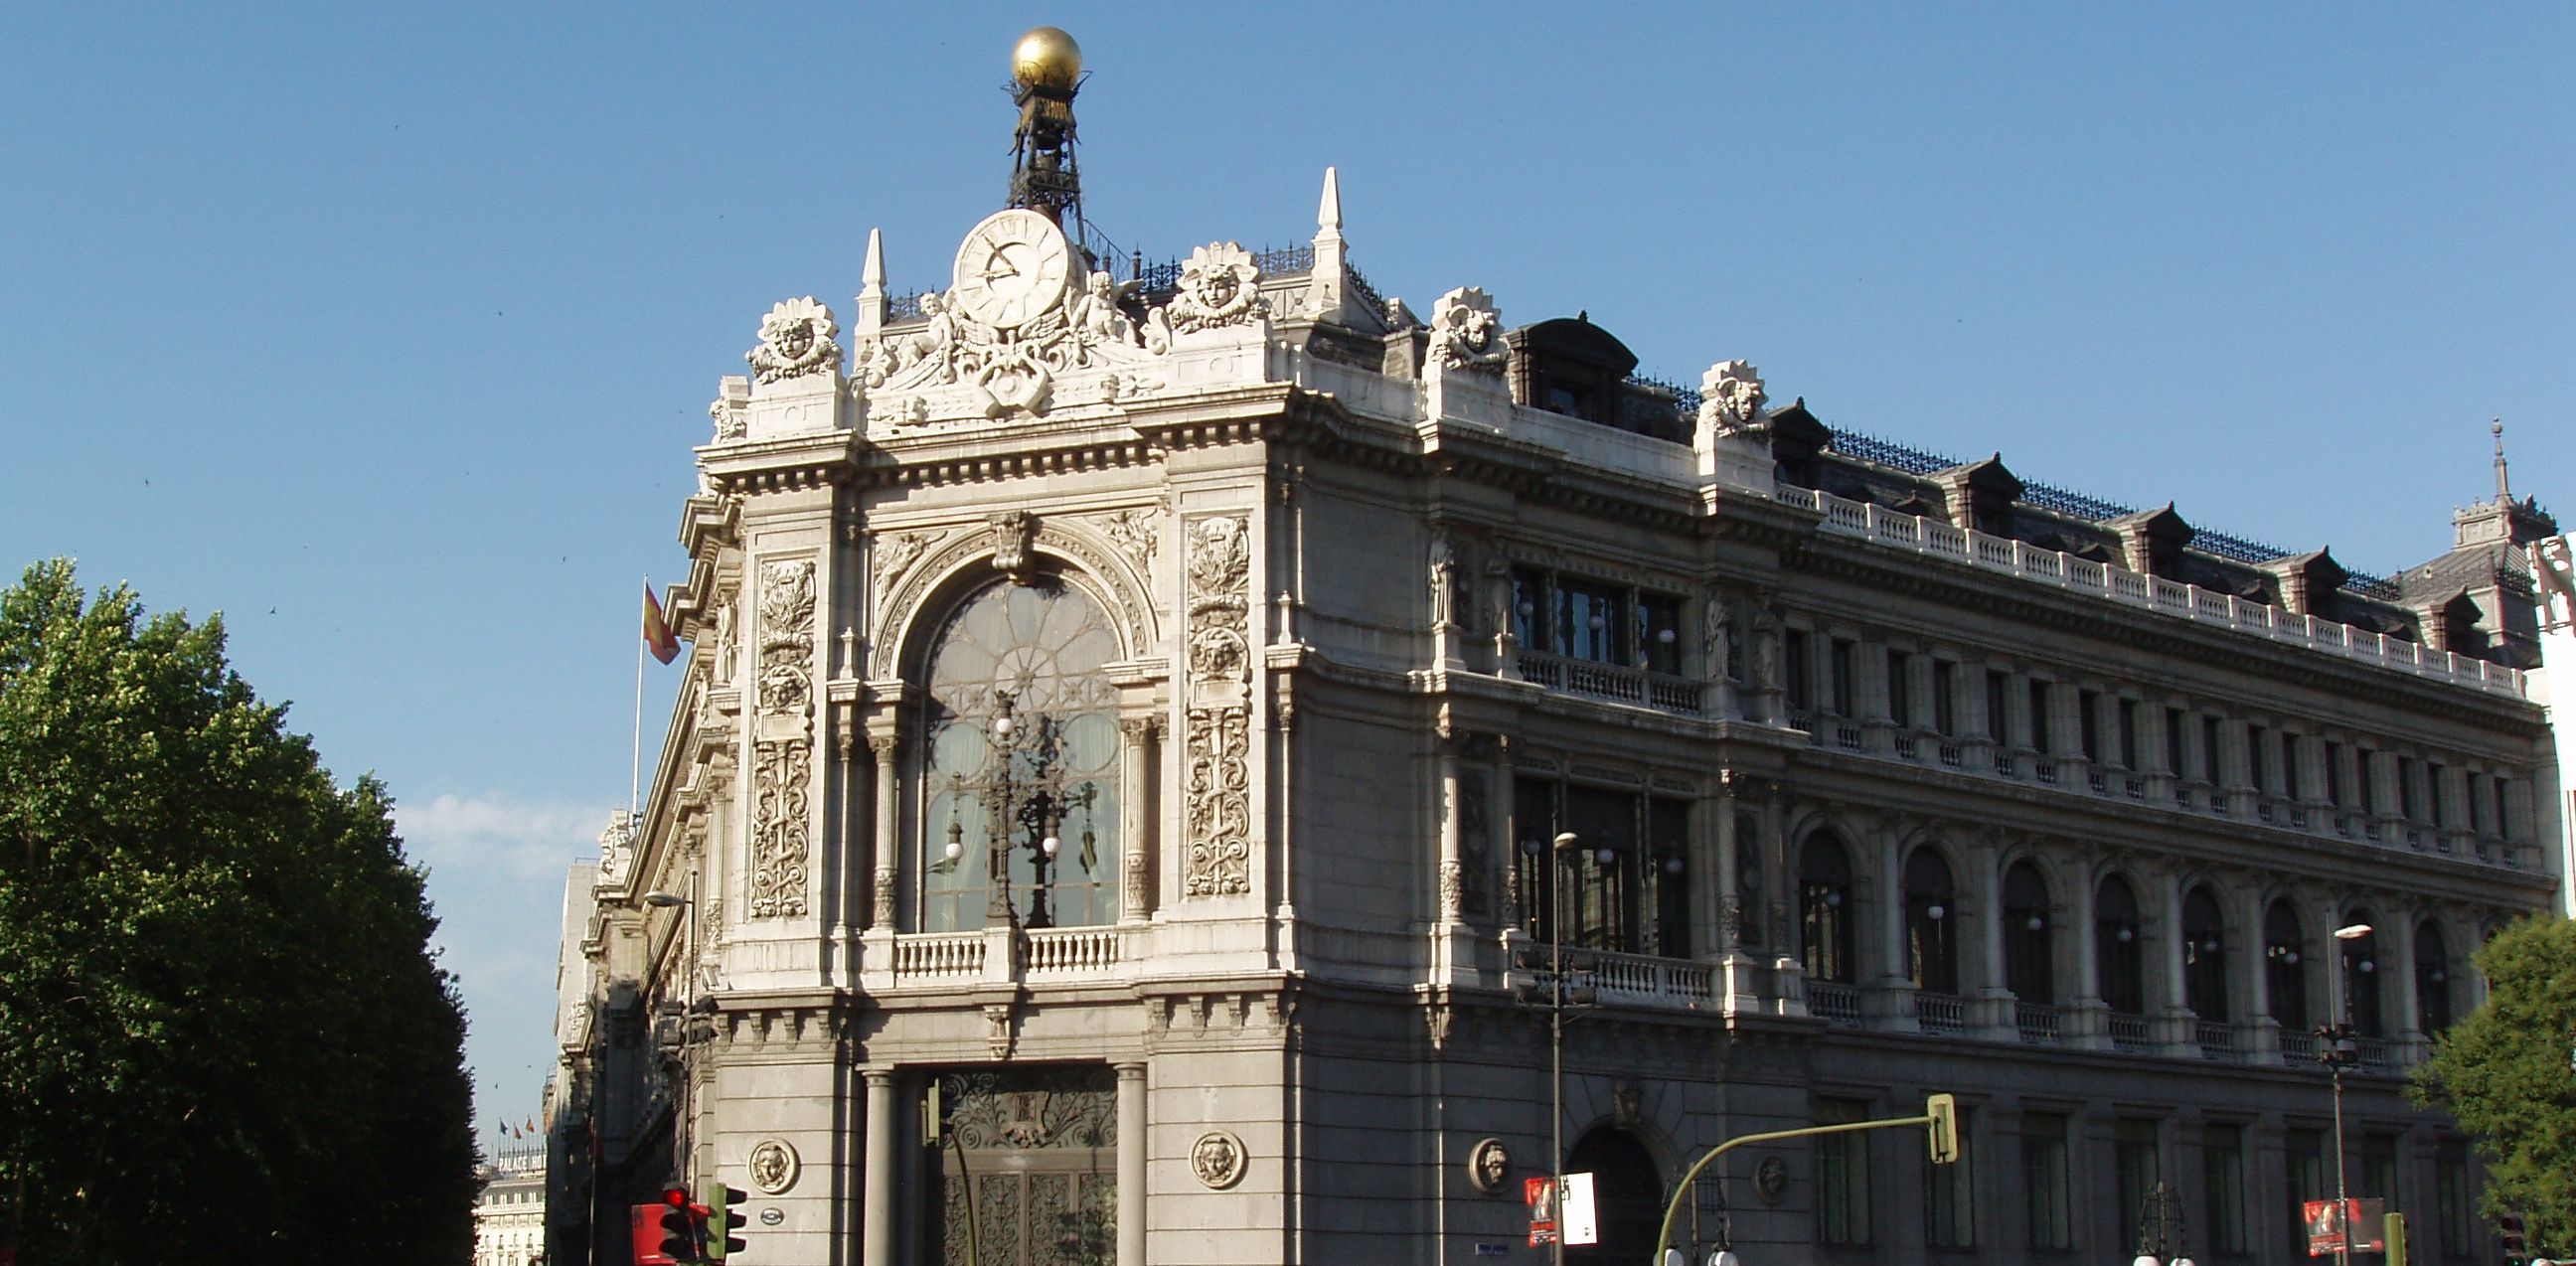 21.12.2007. Madrid. Espana. Banco de Espana / Bank of Spain